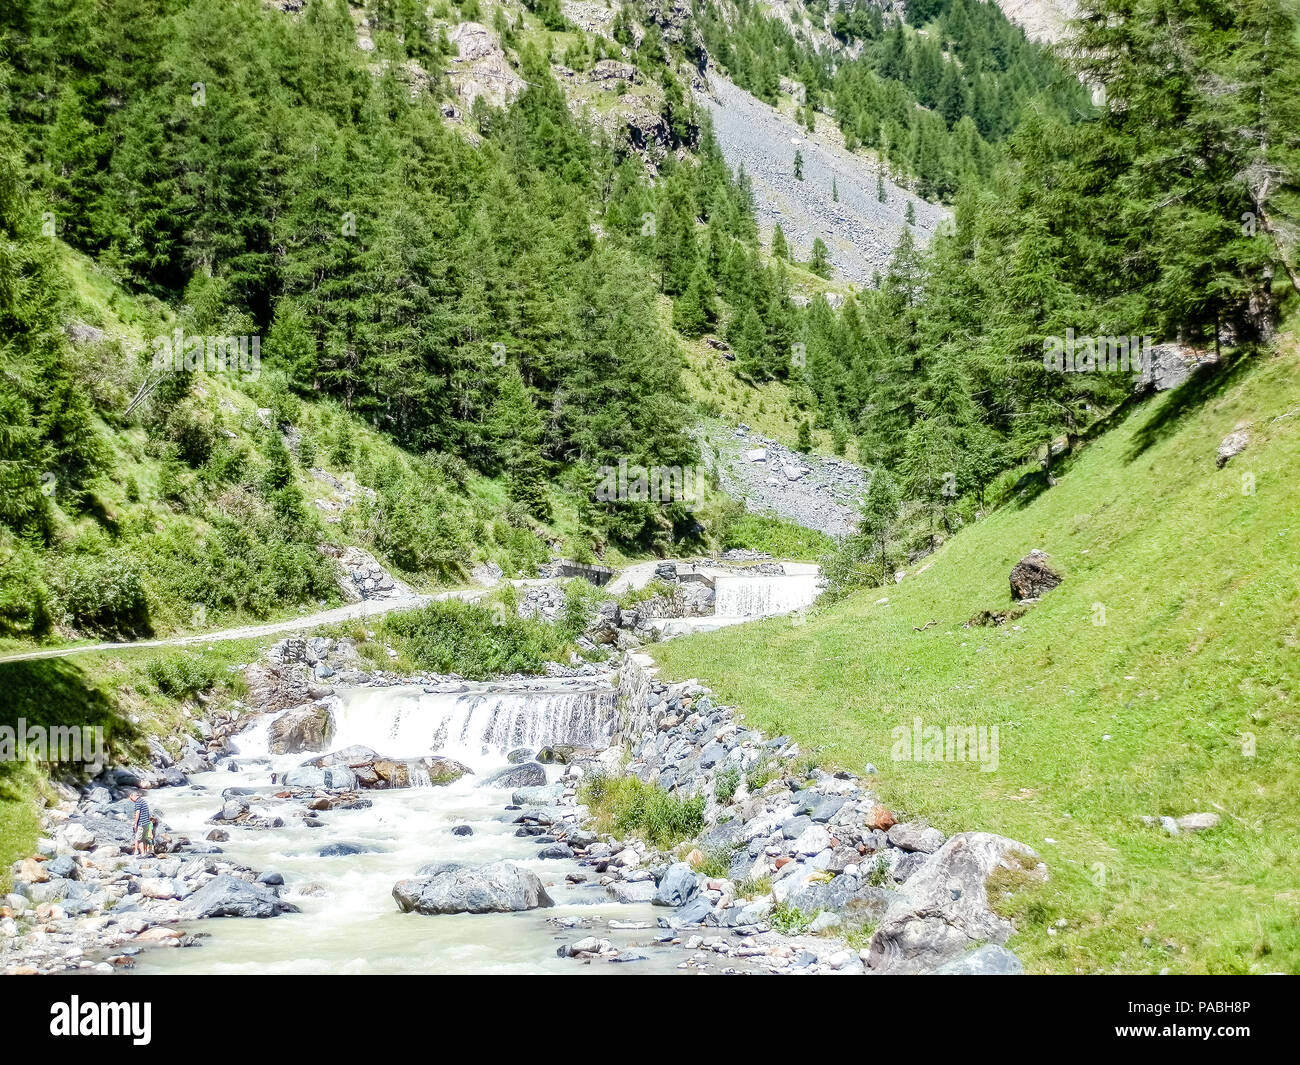 Belle vue sur les forêts, des fleurs, des lacs et des rivières de la vallée alpine de Gressoney, situé dans la vallée d'aoste, Italie du nord Banque D'Images